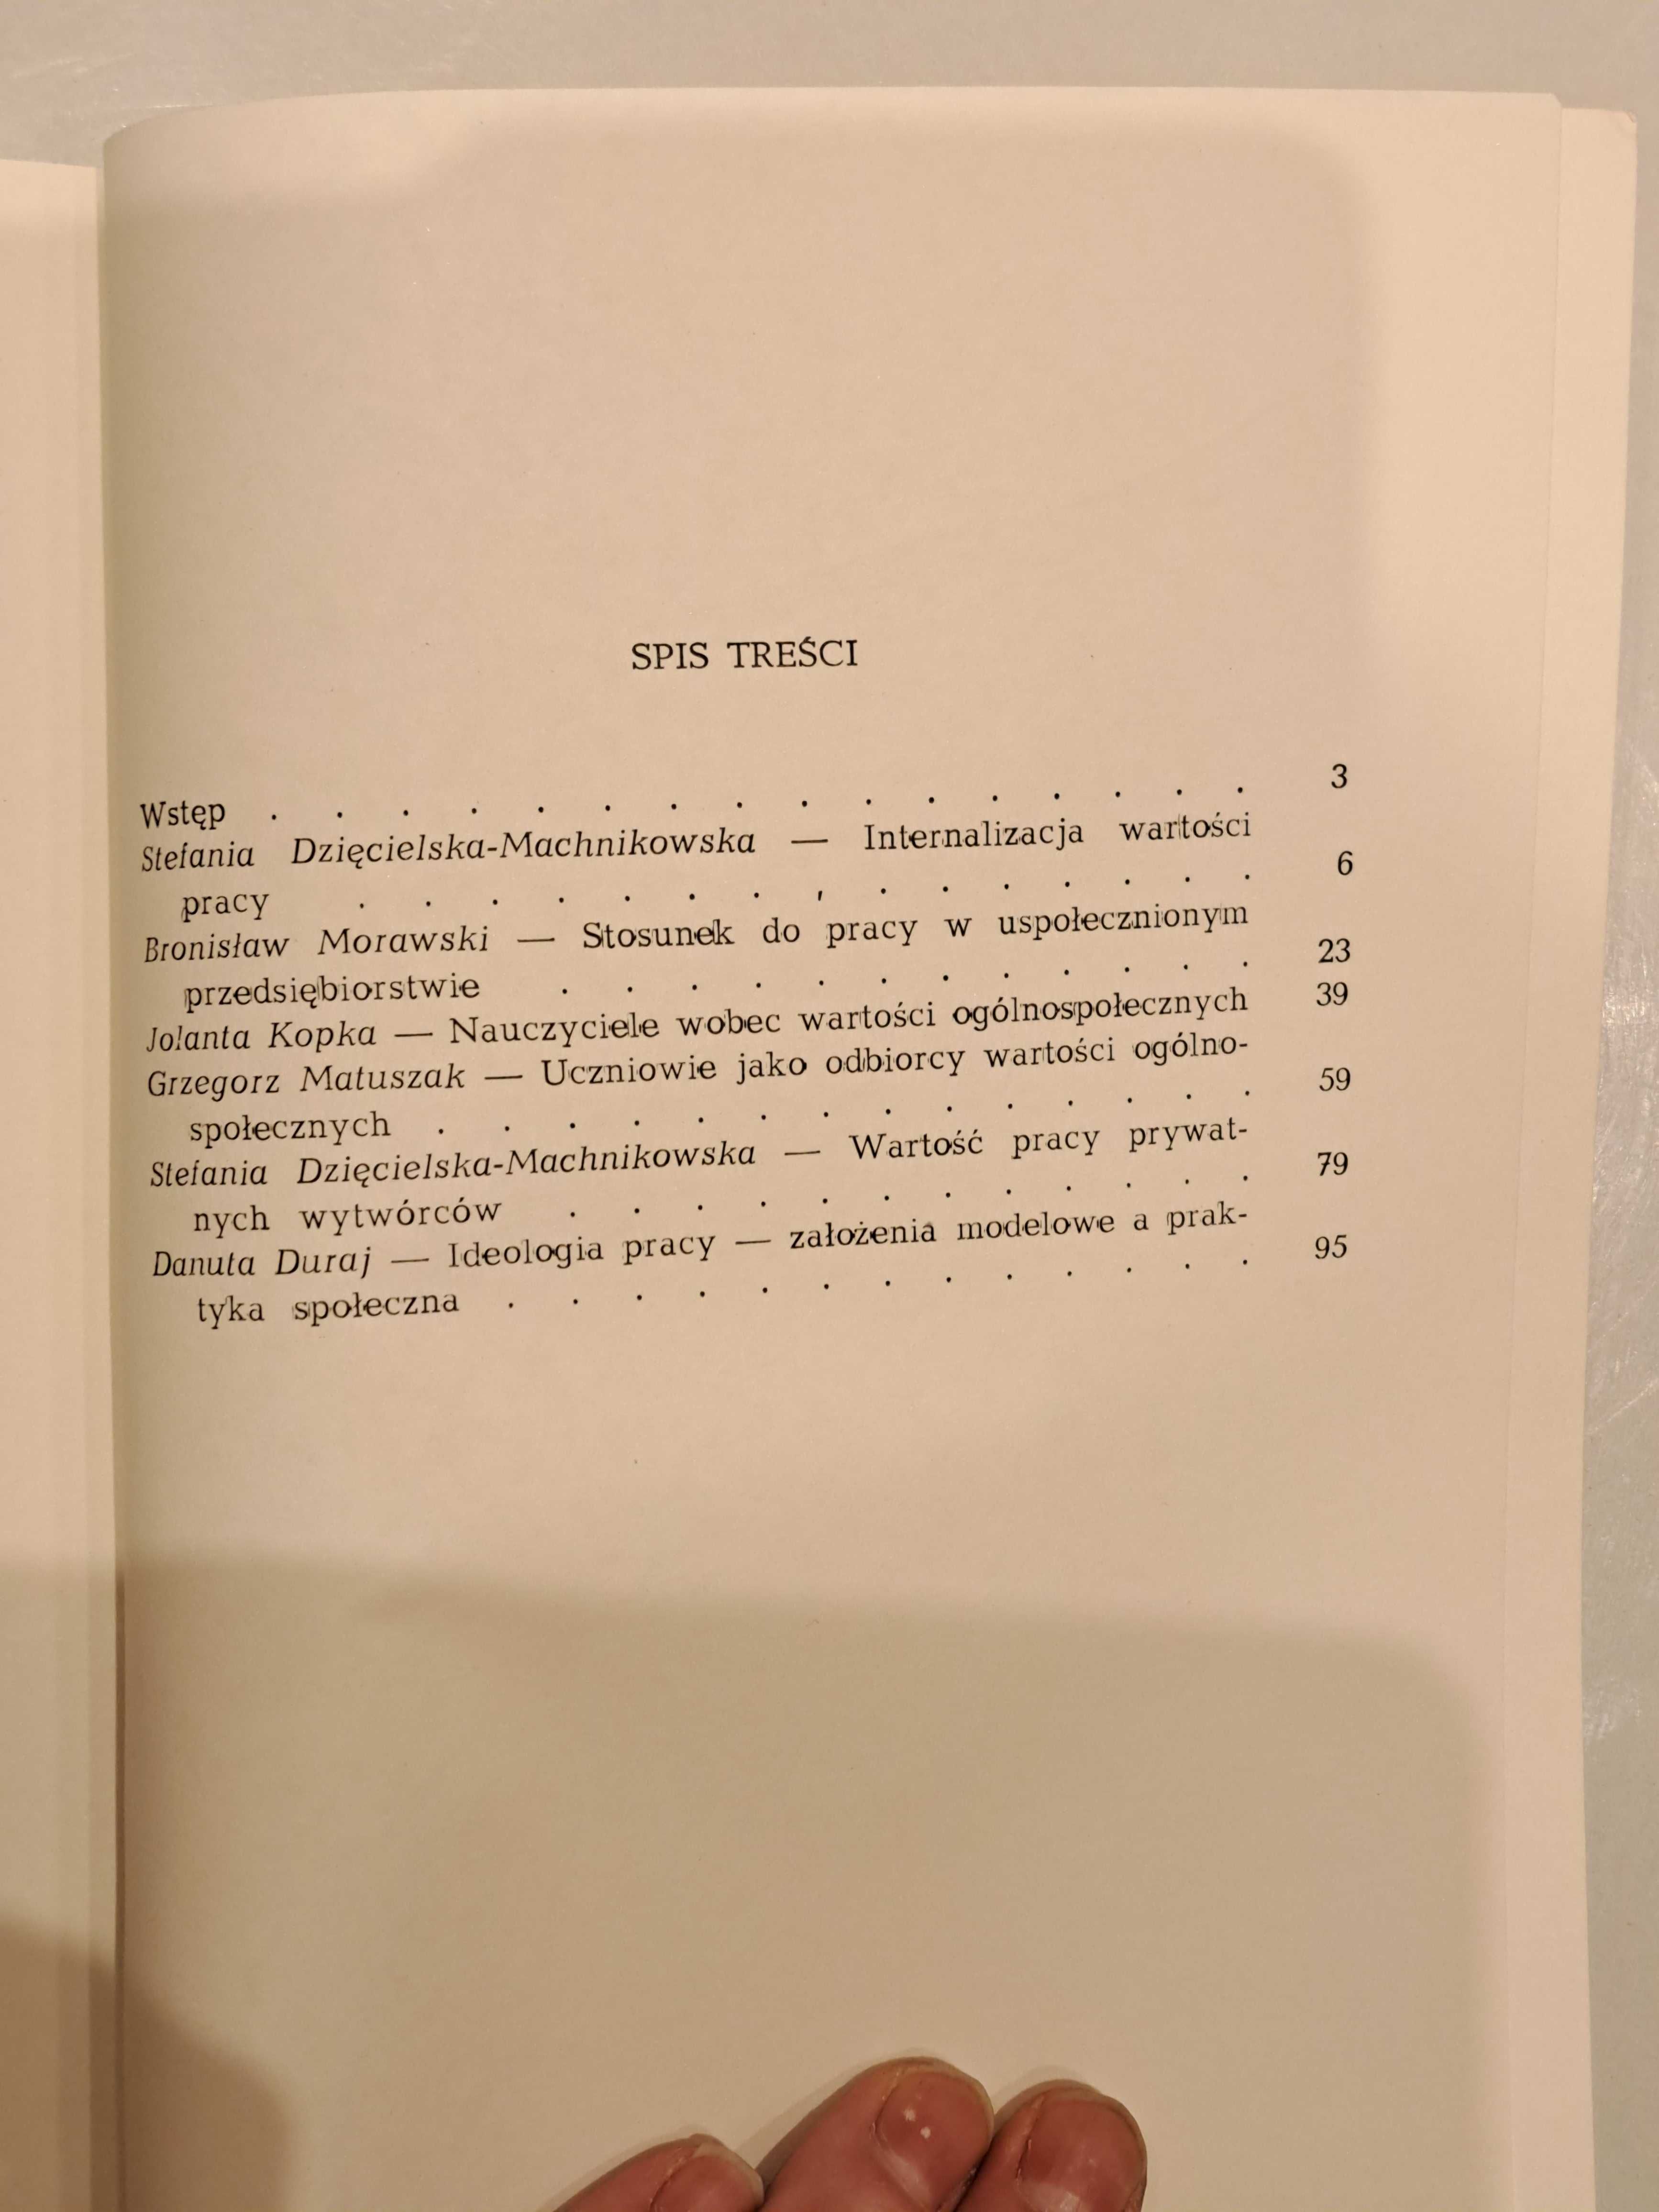 PRL 1989 Pedagogika Socjologia "Ideologia Pracy a Praktyka Społeczna"